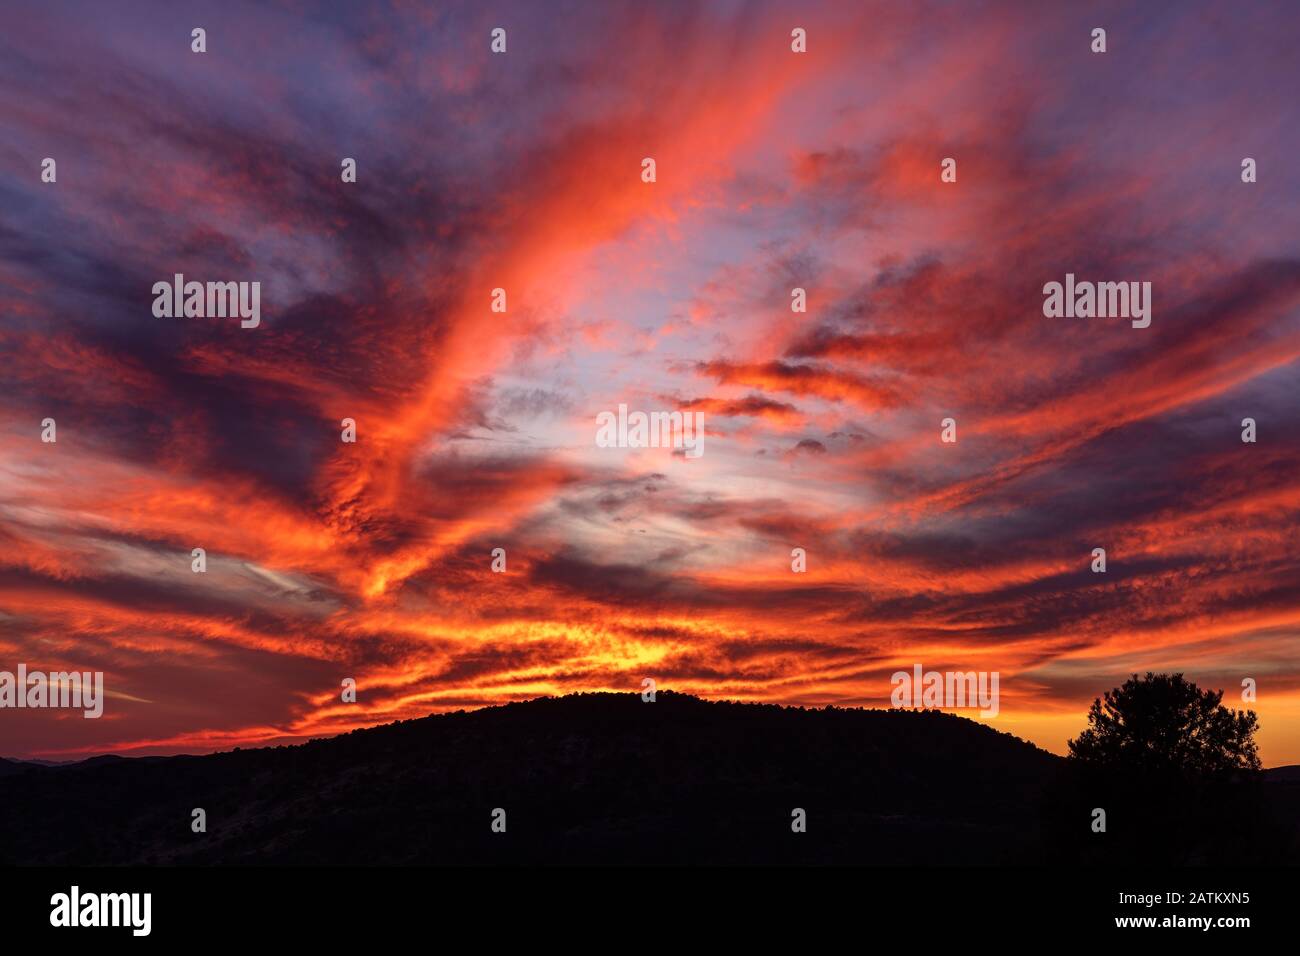 Farbenfroher Himmel mit dramatischen Wolken und Berg-Silhouette im Hintergrund. Stockfoto